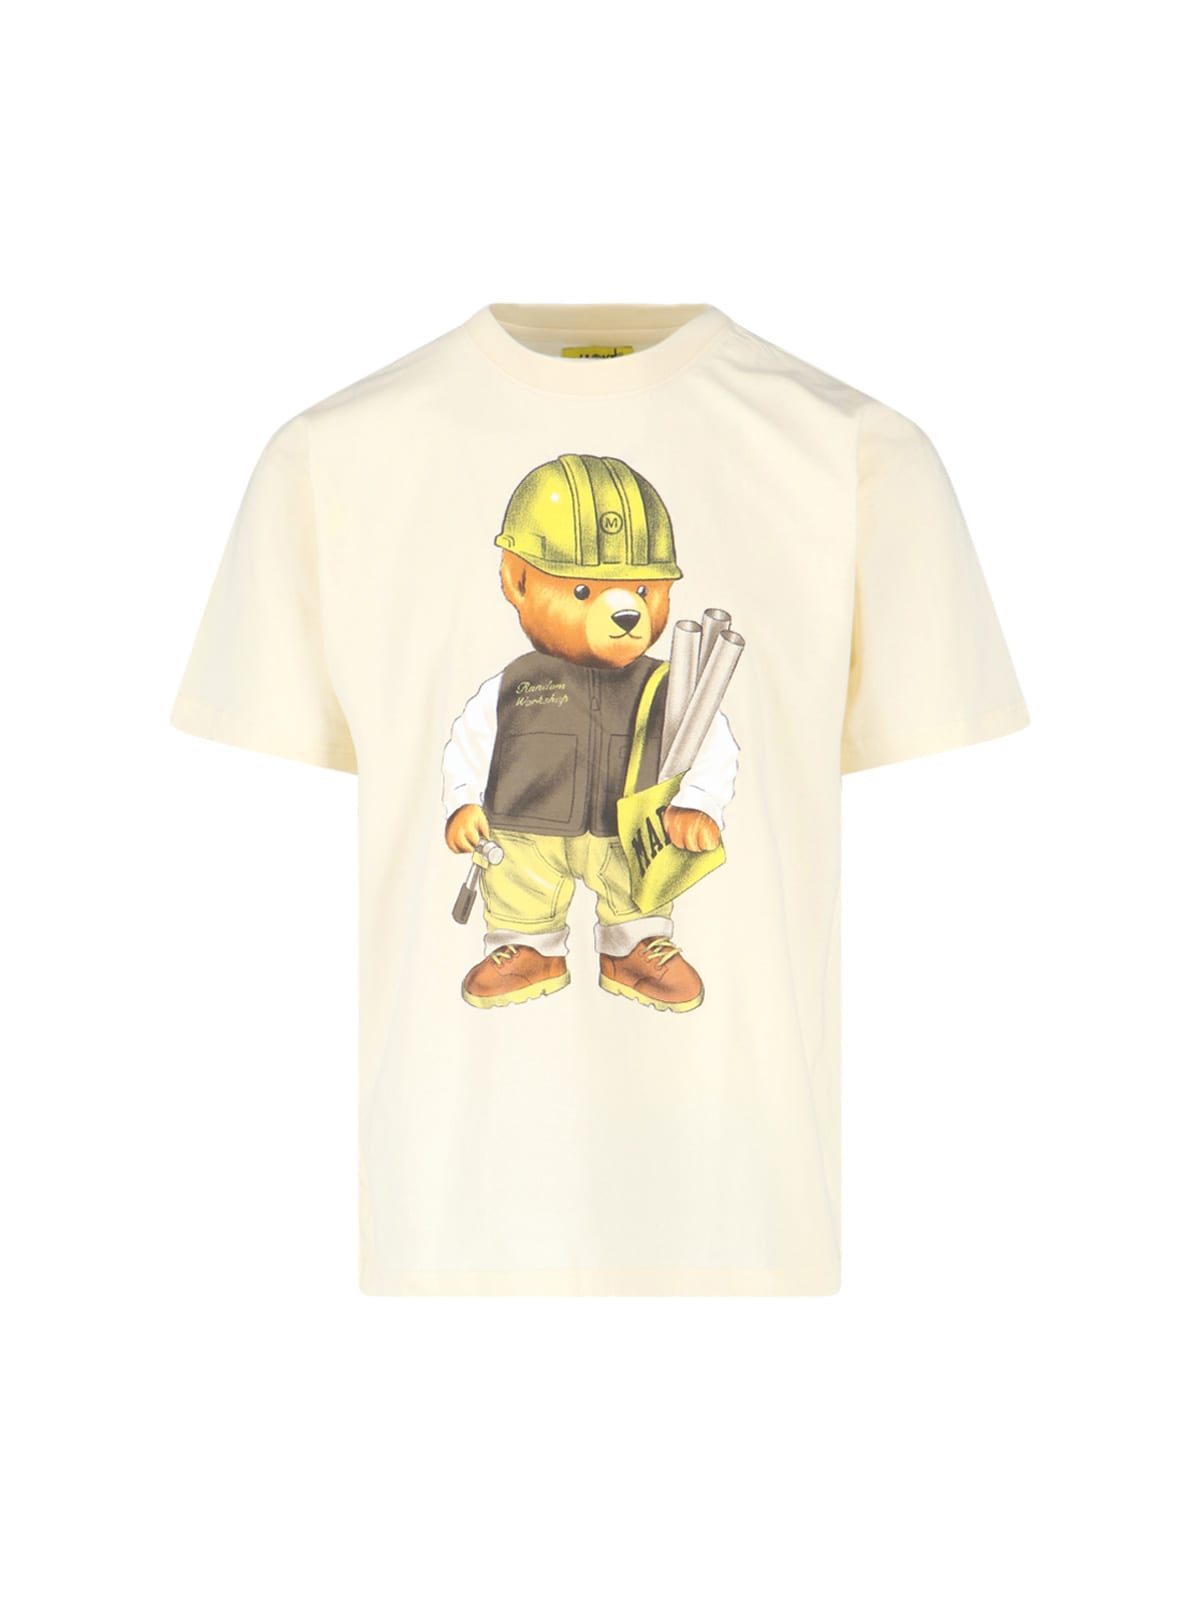 Market T-Shirt